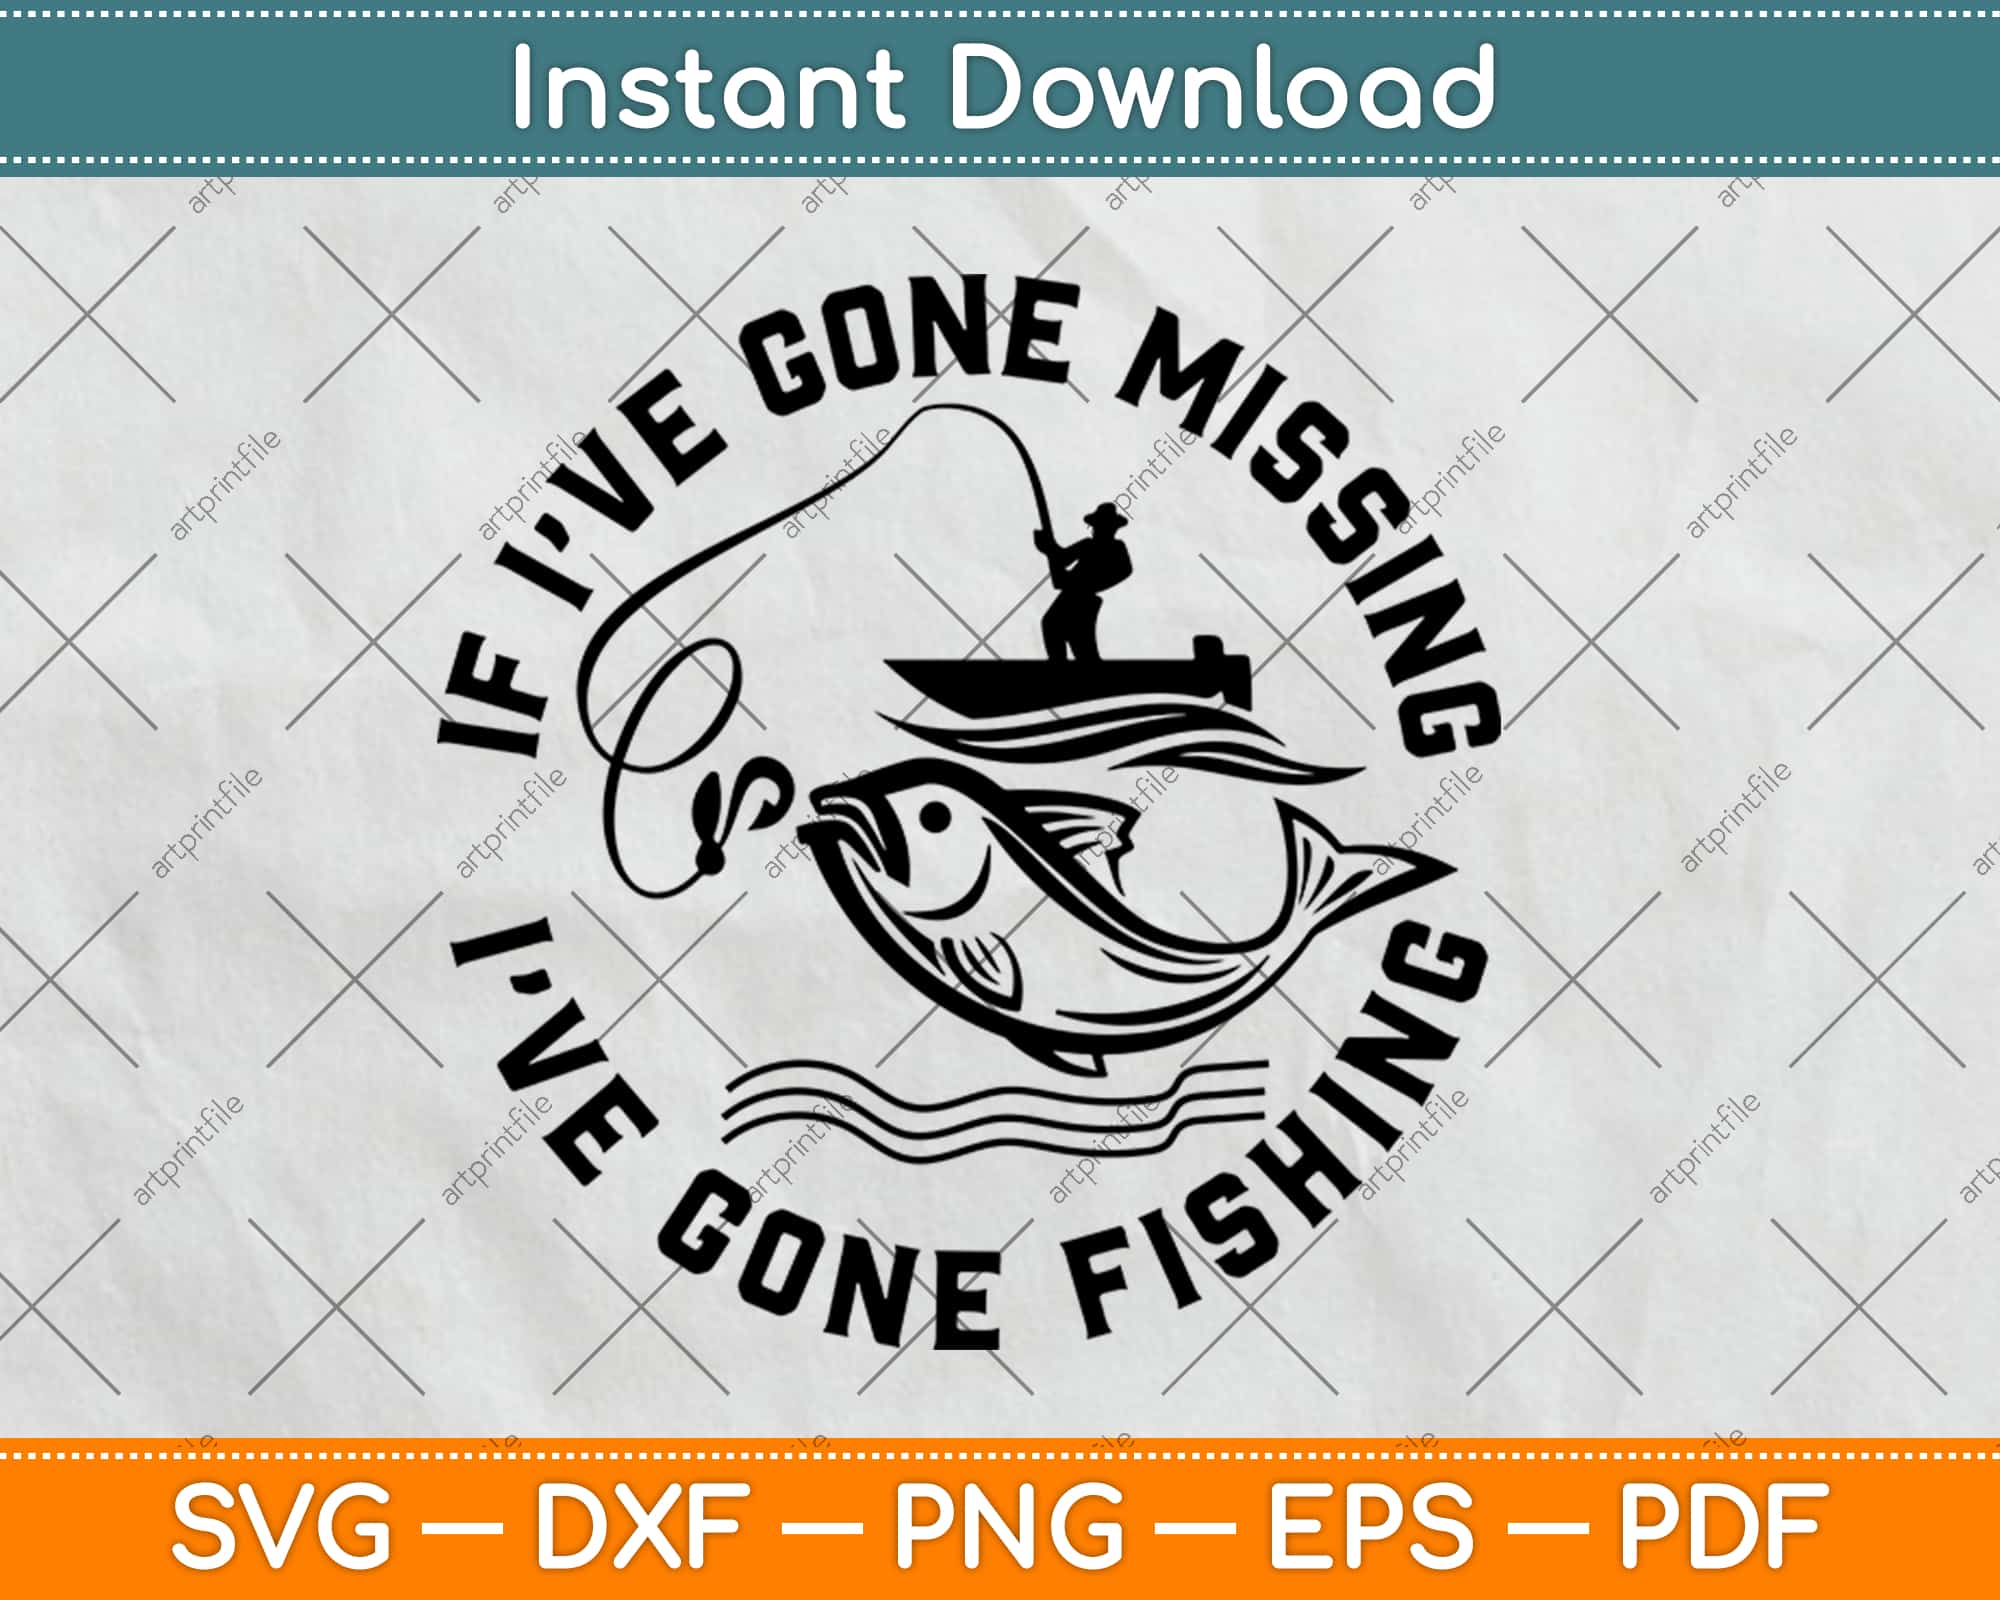 Download If I Ve Gone Missing I Ve Gone Fishing Svg Png Dxf Craft Cut File Instant Download Artprintfile